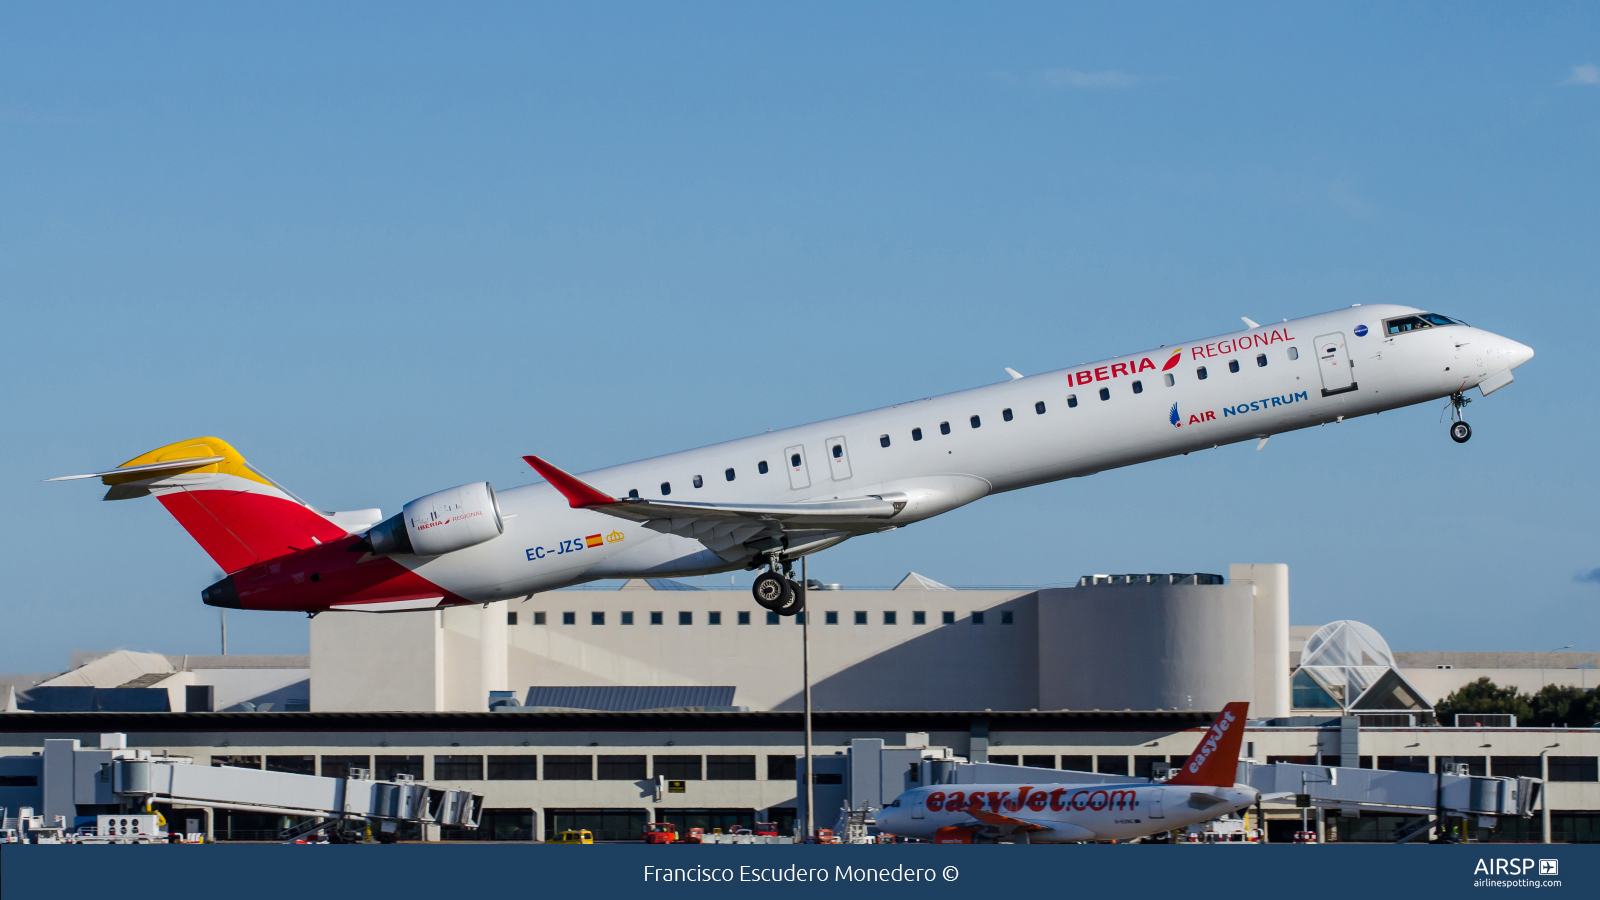 Air Nostrum Iberia Regional  Mitsubishi CRJ-900  EC-JZS